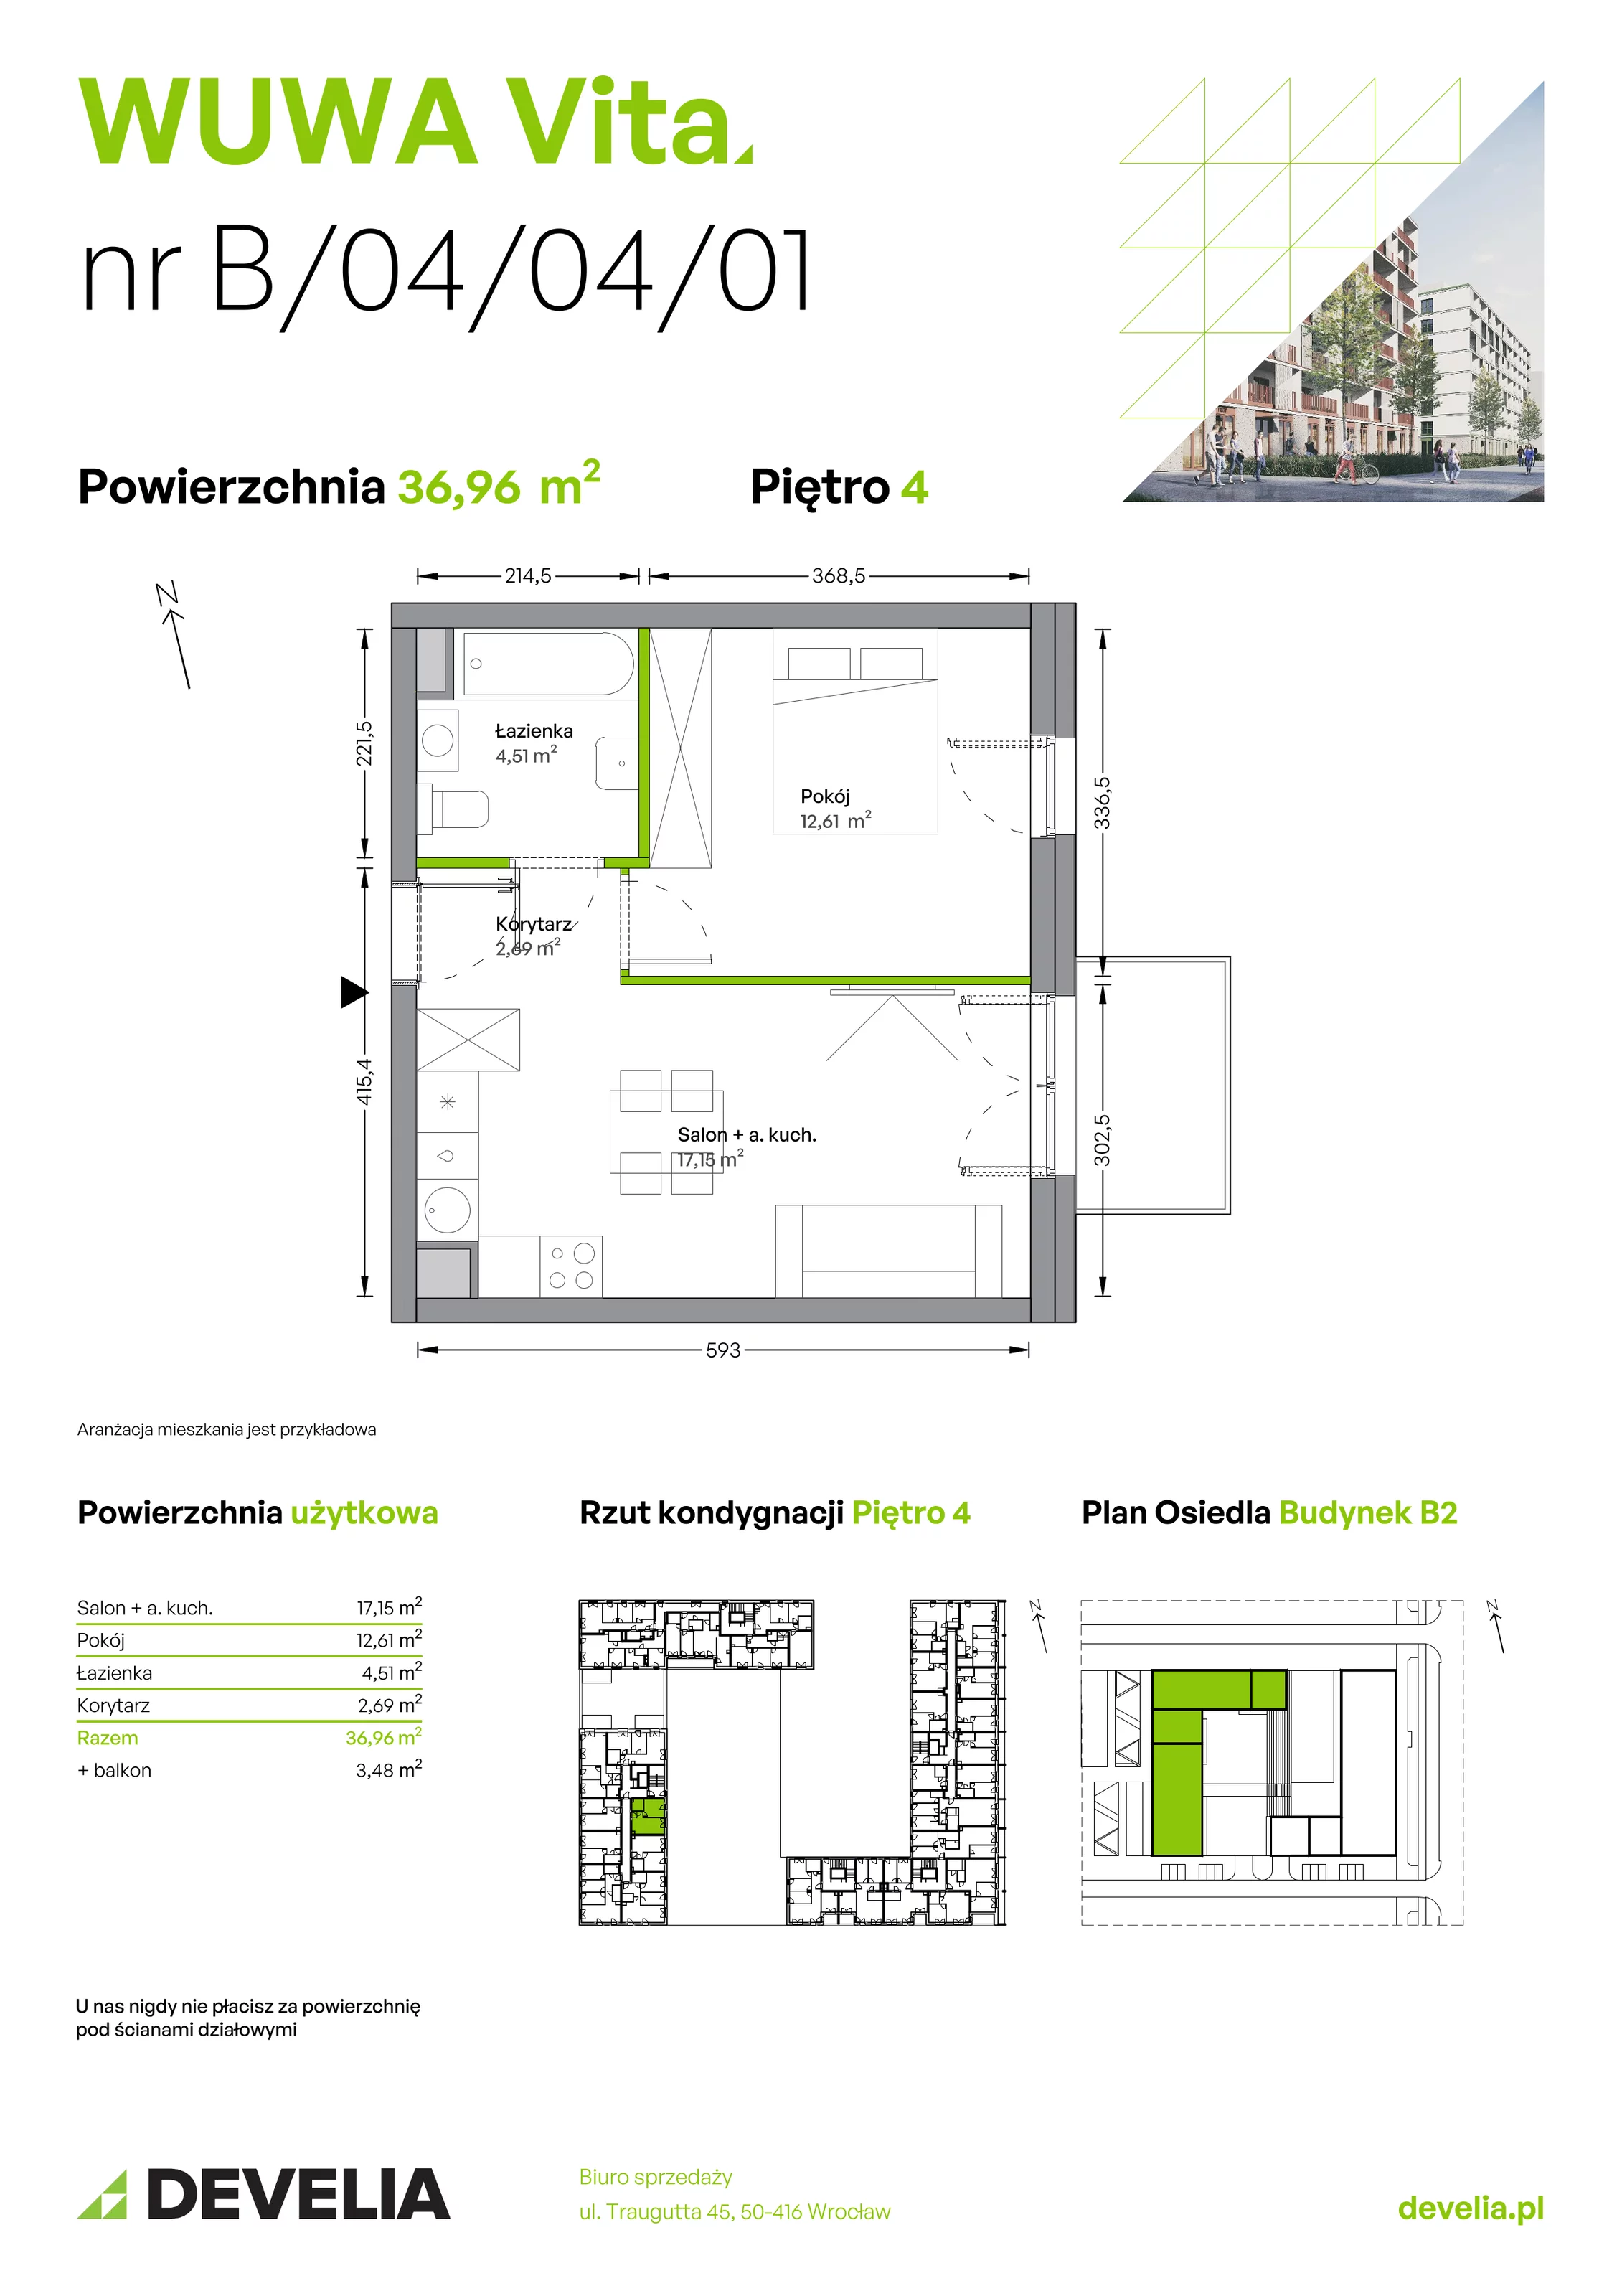 Mieszkanie 36,96 m², piętro 4, oferta nr B.04.04.01, WUWA Vita, Wrocław, Żerniki, Fabryczna, ul. Tadeusza Brzozy